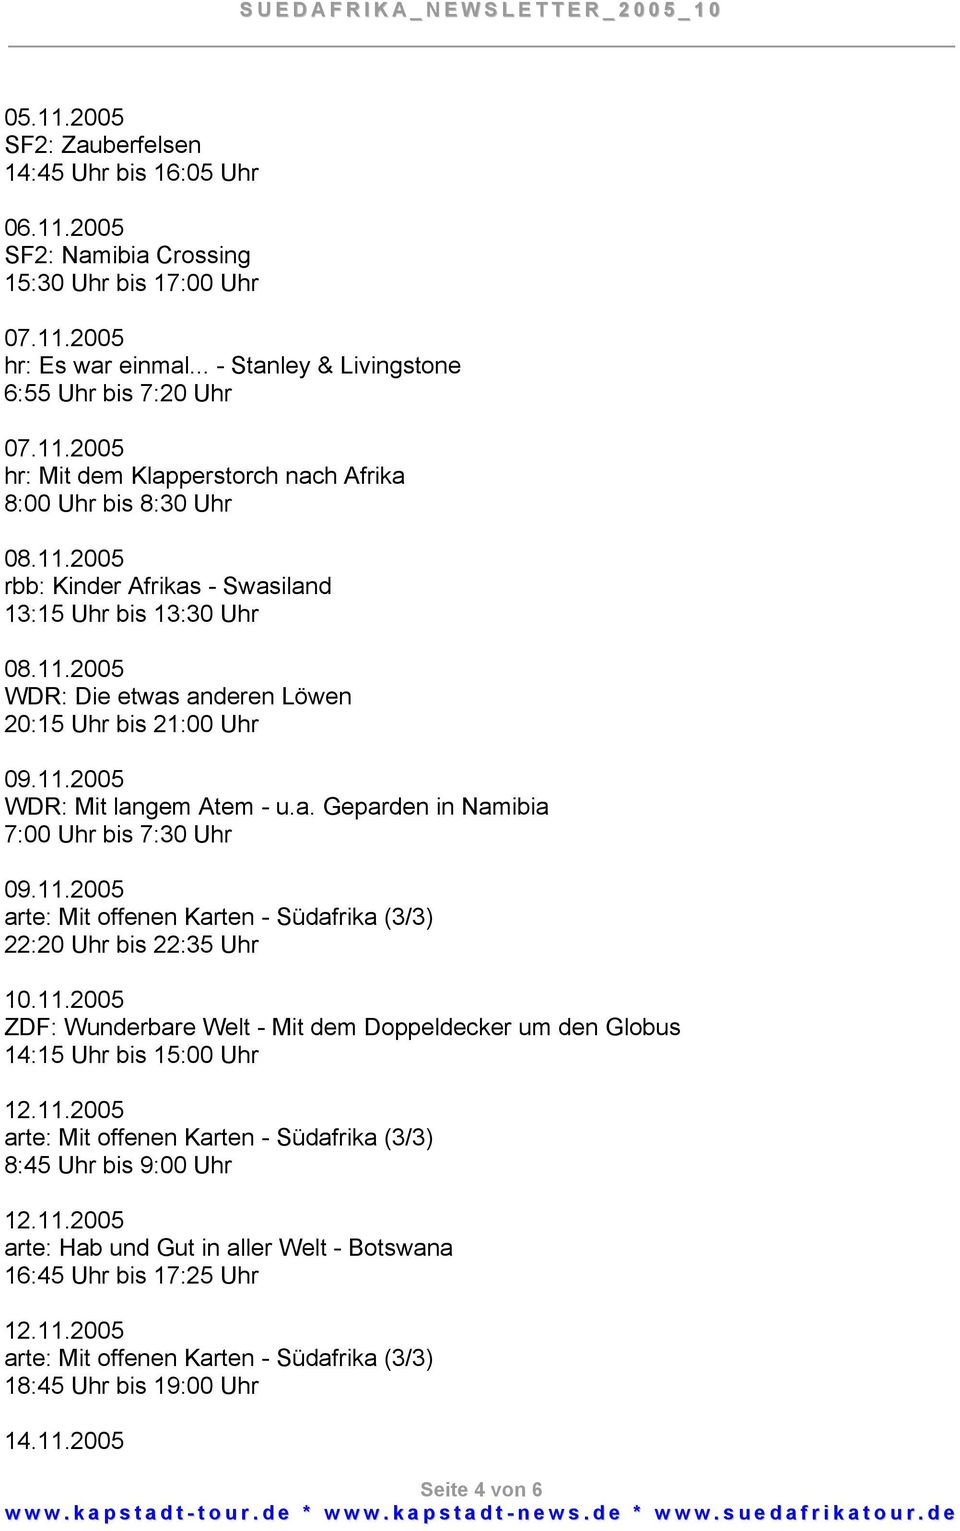 11.2005 arte: Mit offenen Karten - Südafrika (3/3) 22:20 Uhr bis 22:35 Uhr 10.11.2005 ZDF: Wunderbare Welt - Mit dem Doppeldecker um den Globus 14:15 Uhr bis 15:00 Uhr 12.11.2005 arte: Mit offenen Karten - Südafrika (3/3) 8:45 Uhr bis 9:00 Uhr 12.